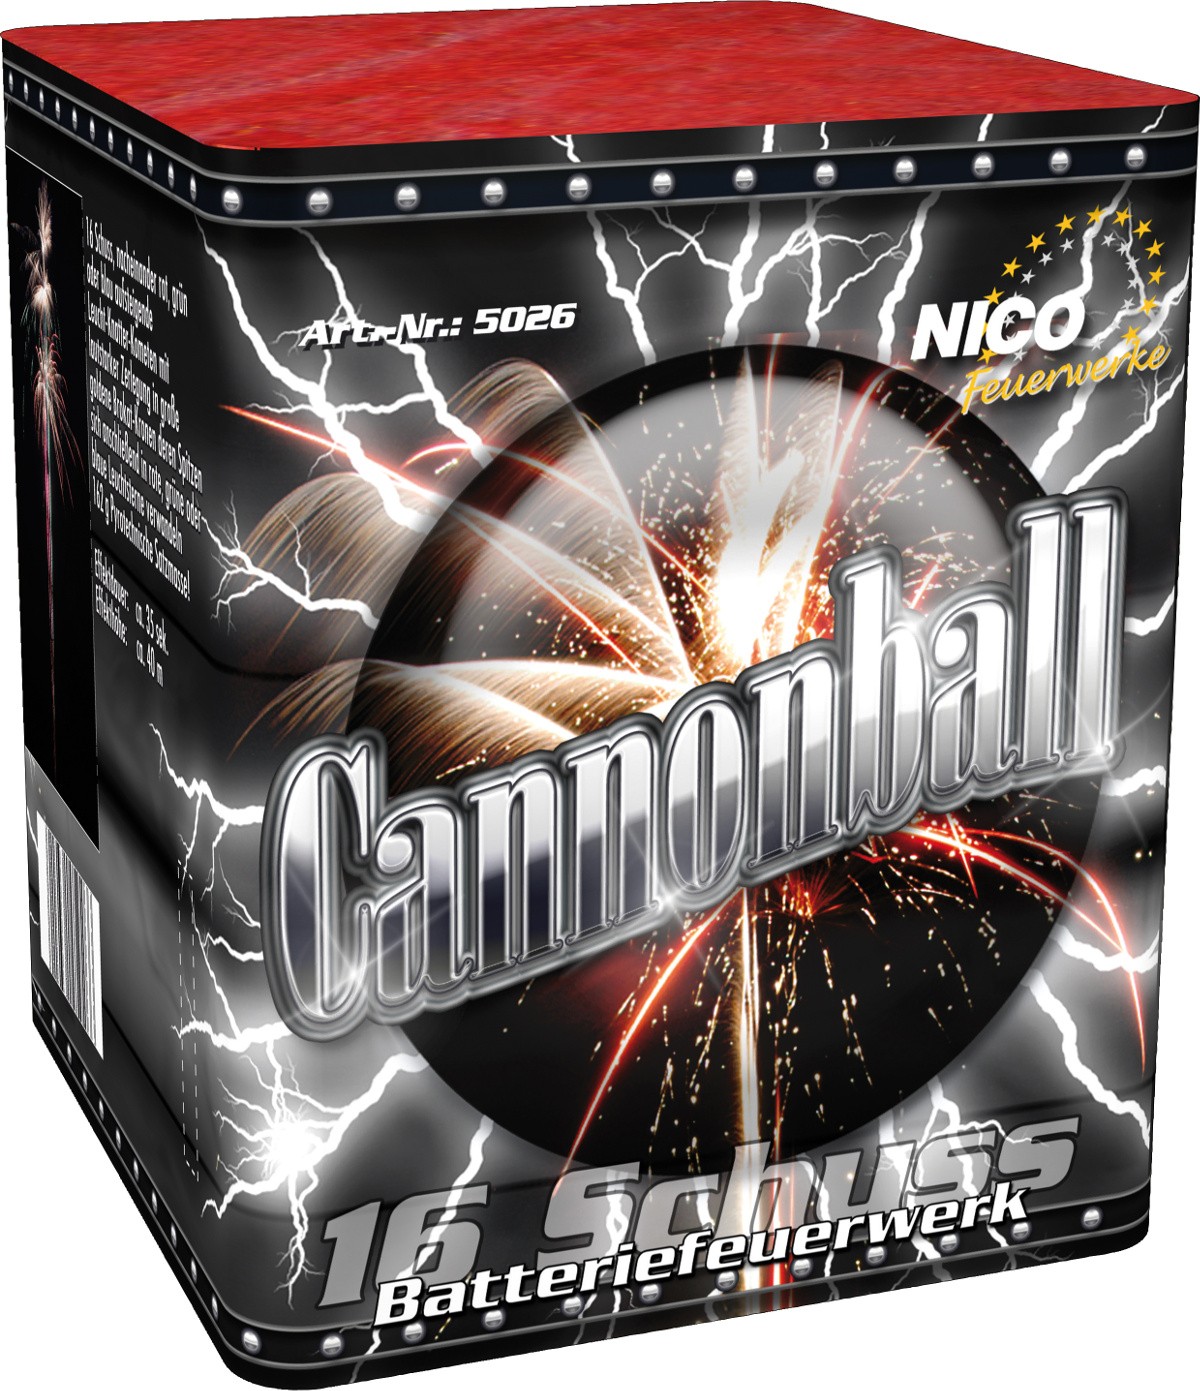 Batterie Cannonball 16 Schuss